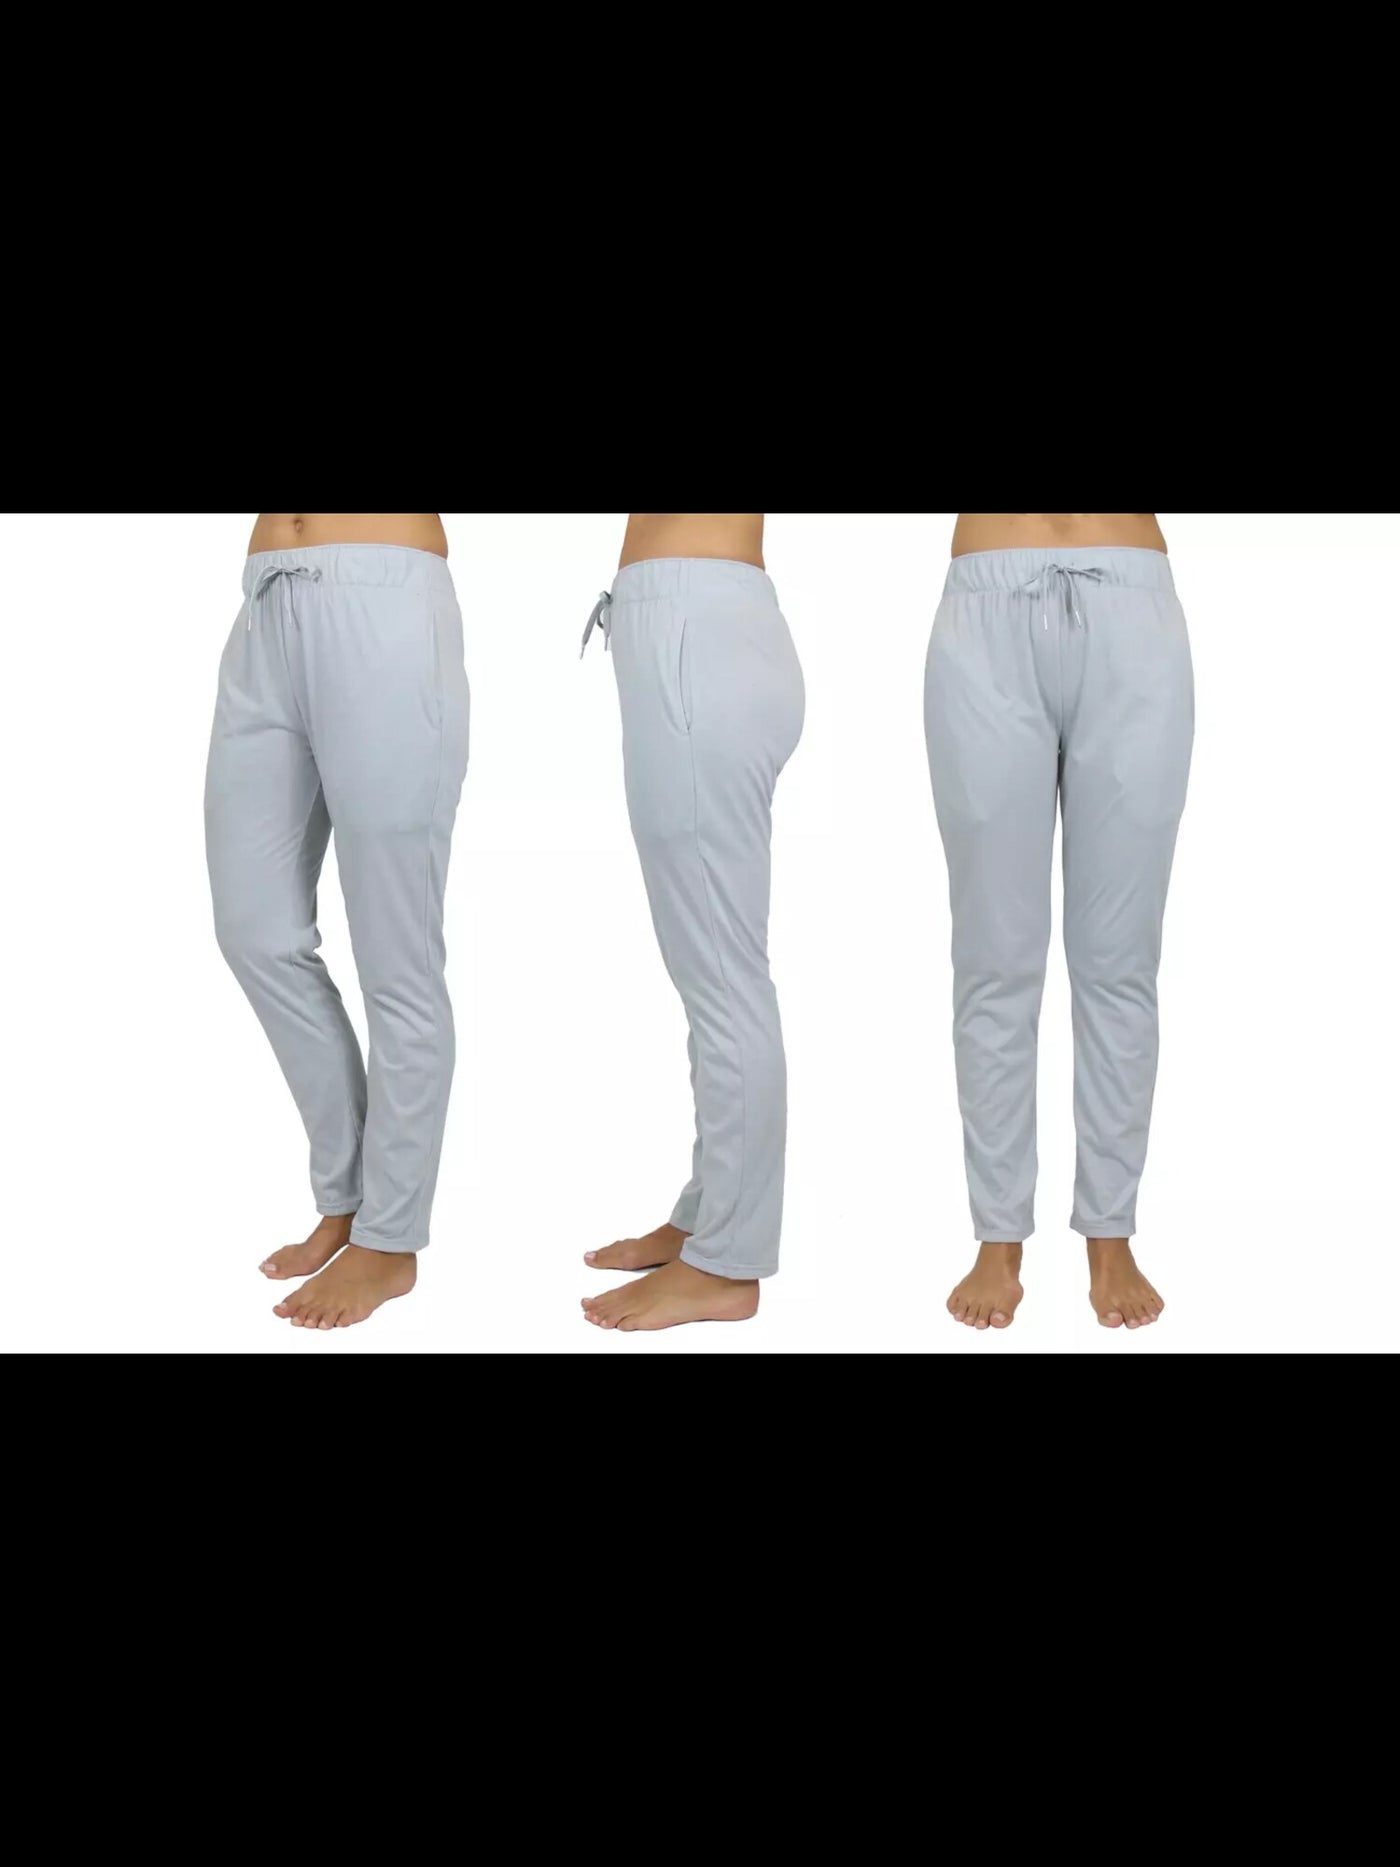 GALAXY Womens Gray Lounge Pants M